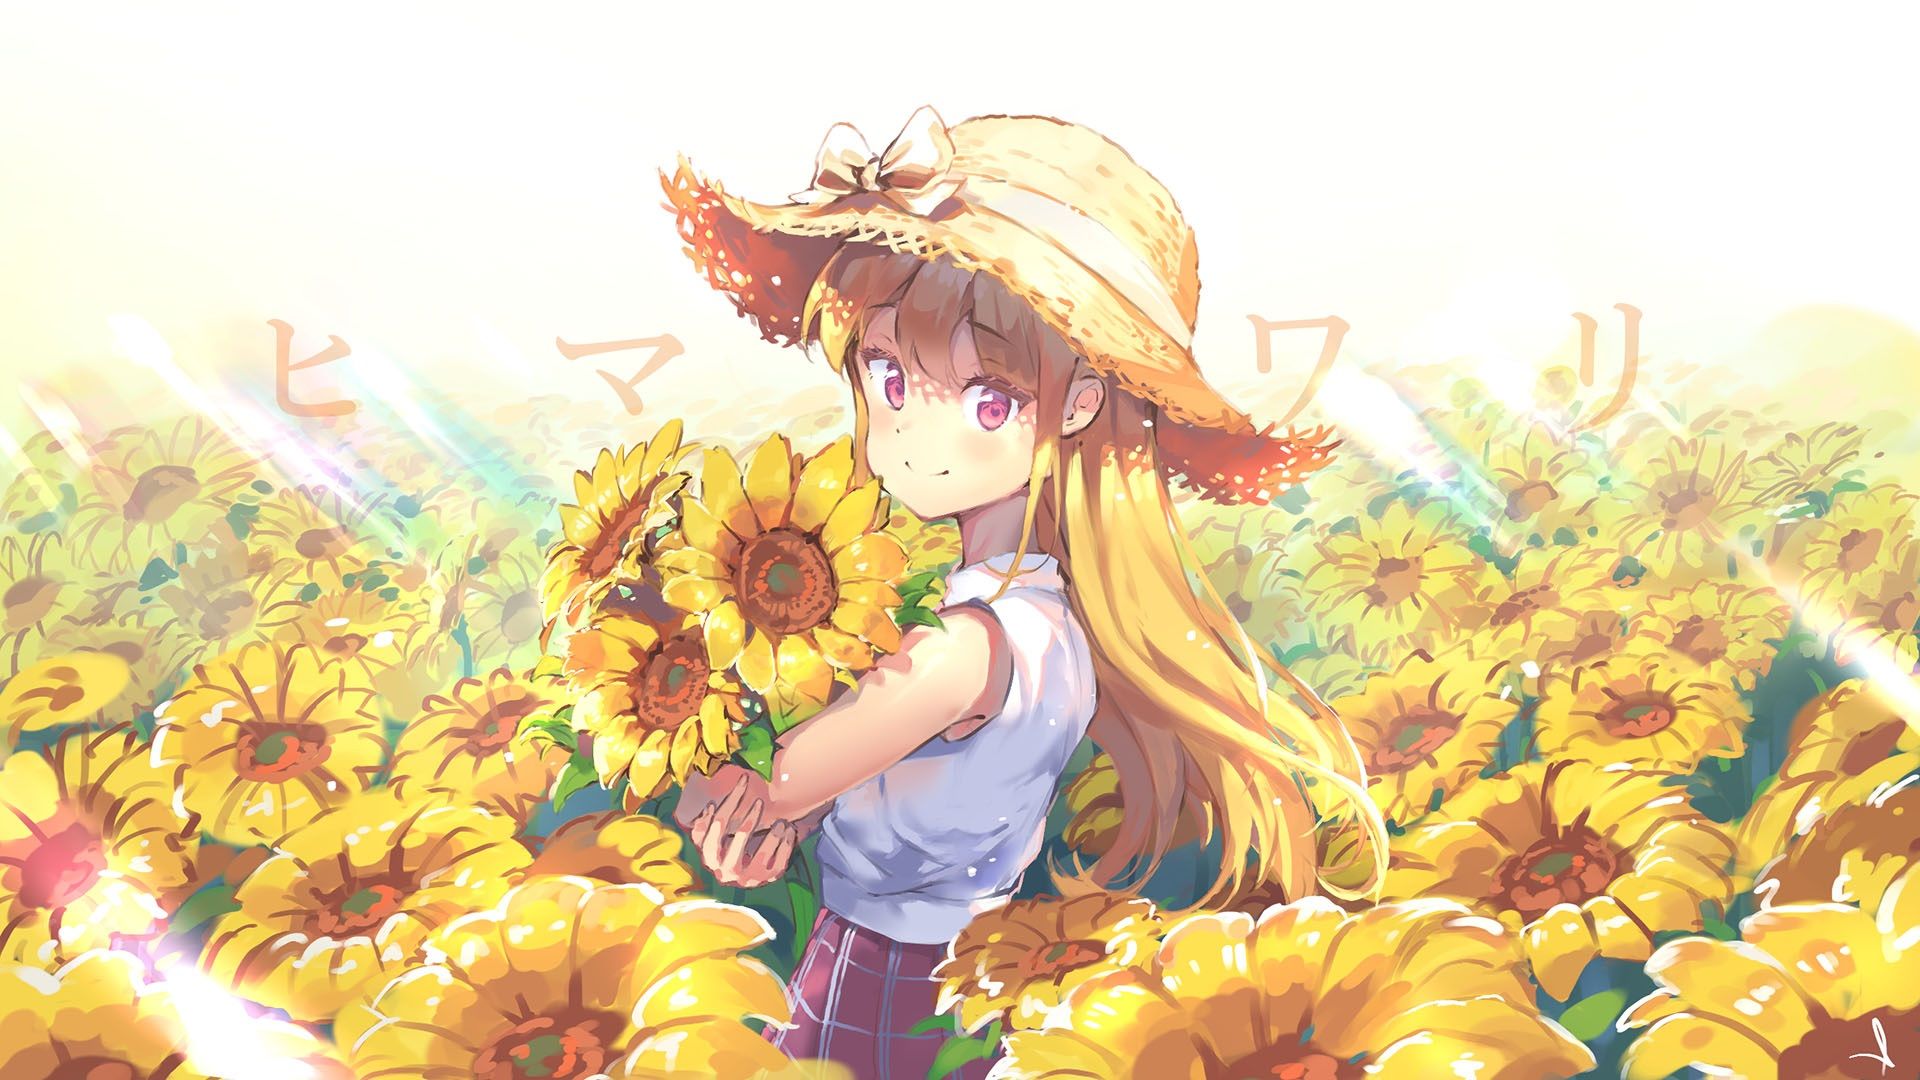 Sunflower Anime Girl Wallpapers Wallpaper Cave